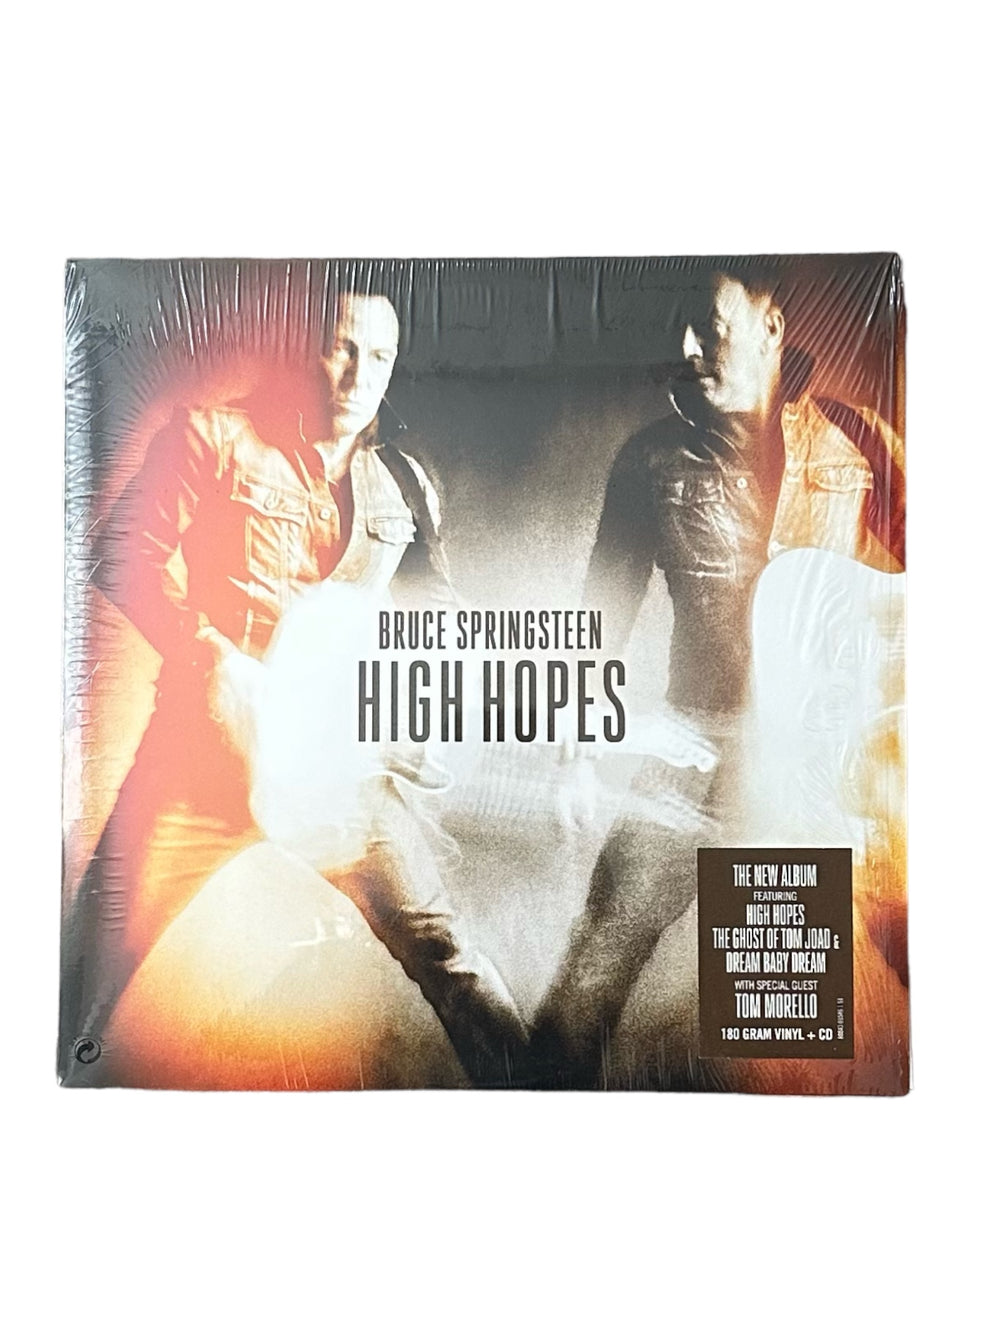 Bruce Springsteen High Hopes Double 180 Gram Vinyl & CD Set Shrink Wrap 2014